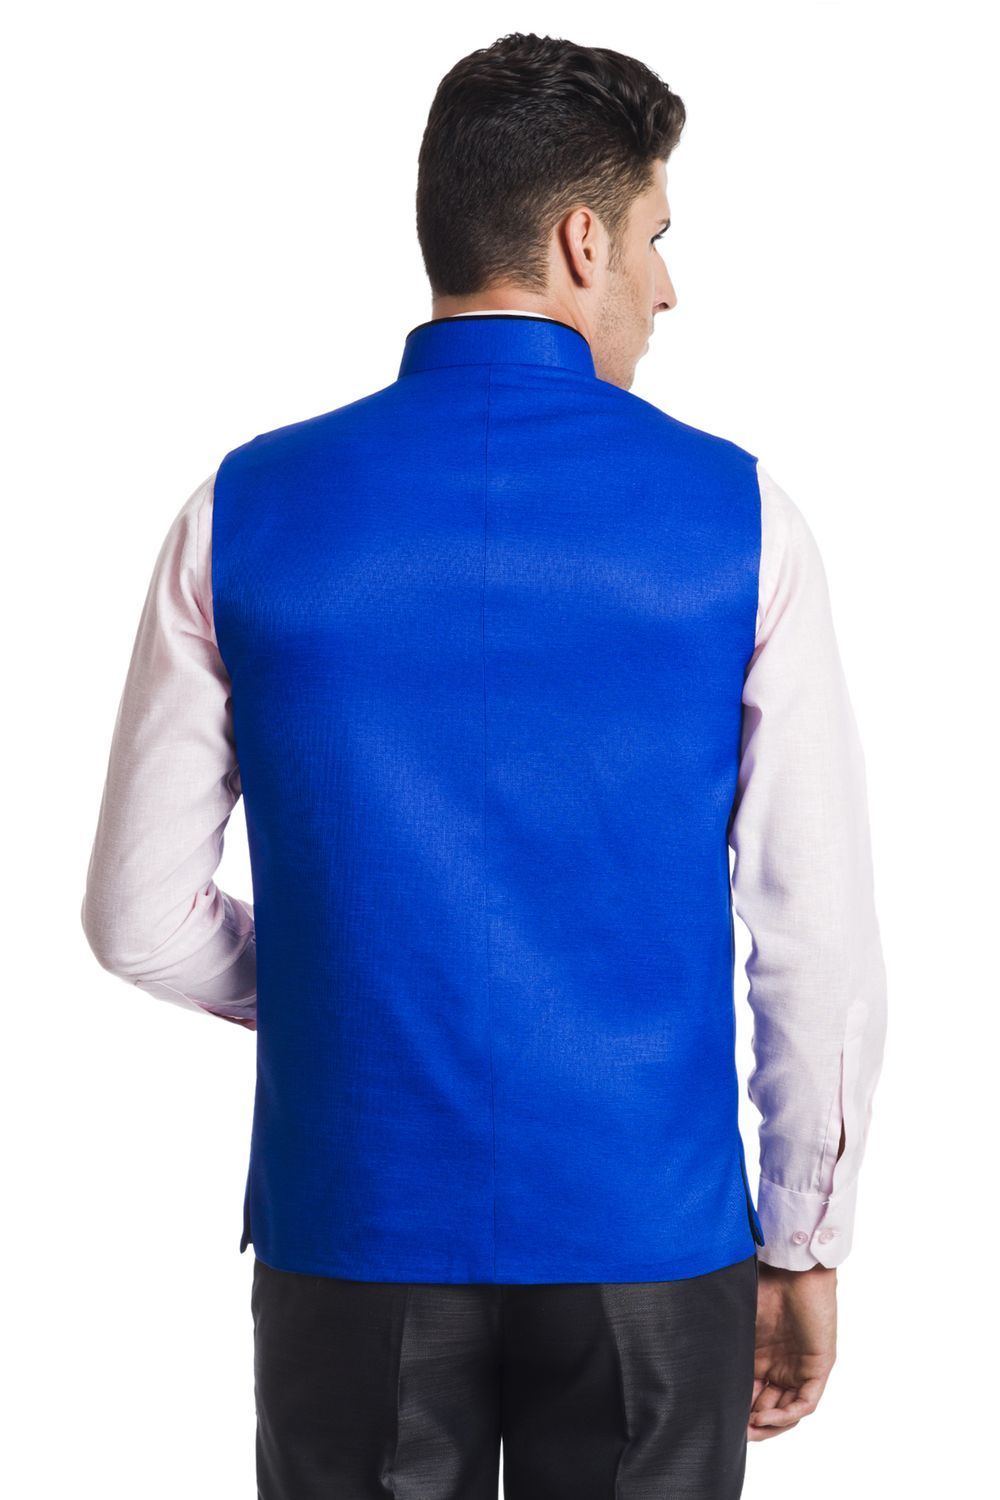 Polyester Cotton Blue Nehru Jacket